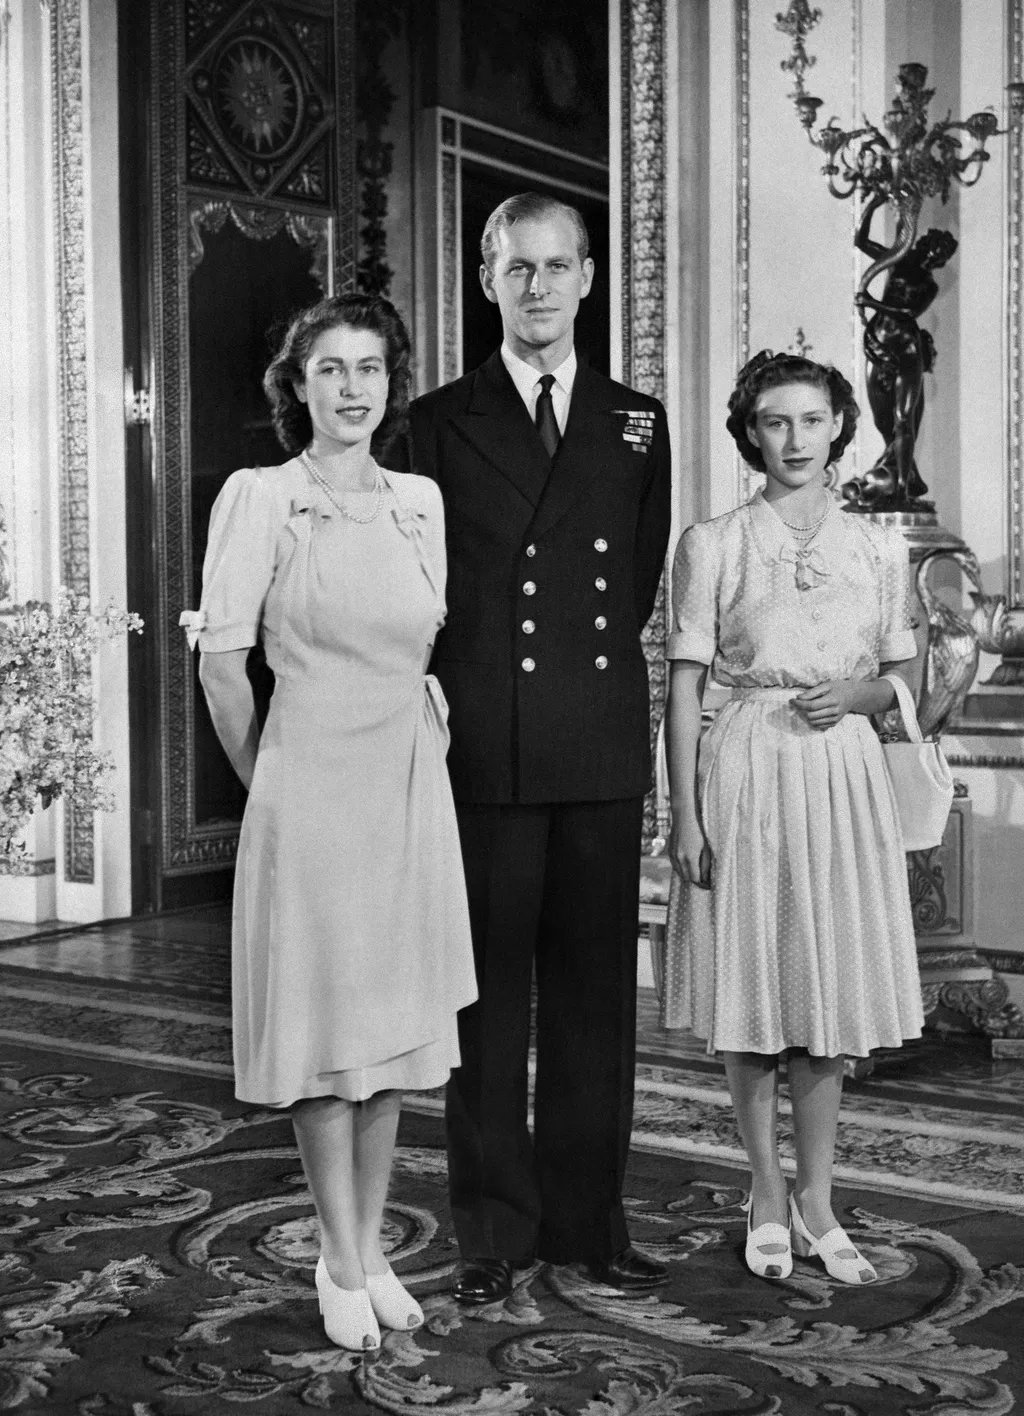 Fülöp edinburgh-i herceg, Prince Philip, Duke of Edinburgh, II. Erzsébet brit királynő férje, angol, 2021.02.21.  BRITAIN-ROYALS-QUEEN Vertical FAMILLE ROYALE PHOTO DE FAMILLE EN PIED photo noir et blanc PRINCESSE DUC SOEUR FIANCAILLES 